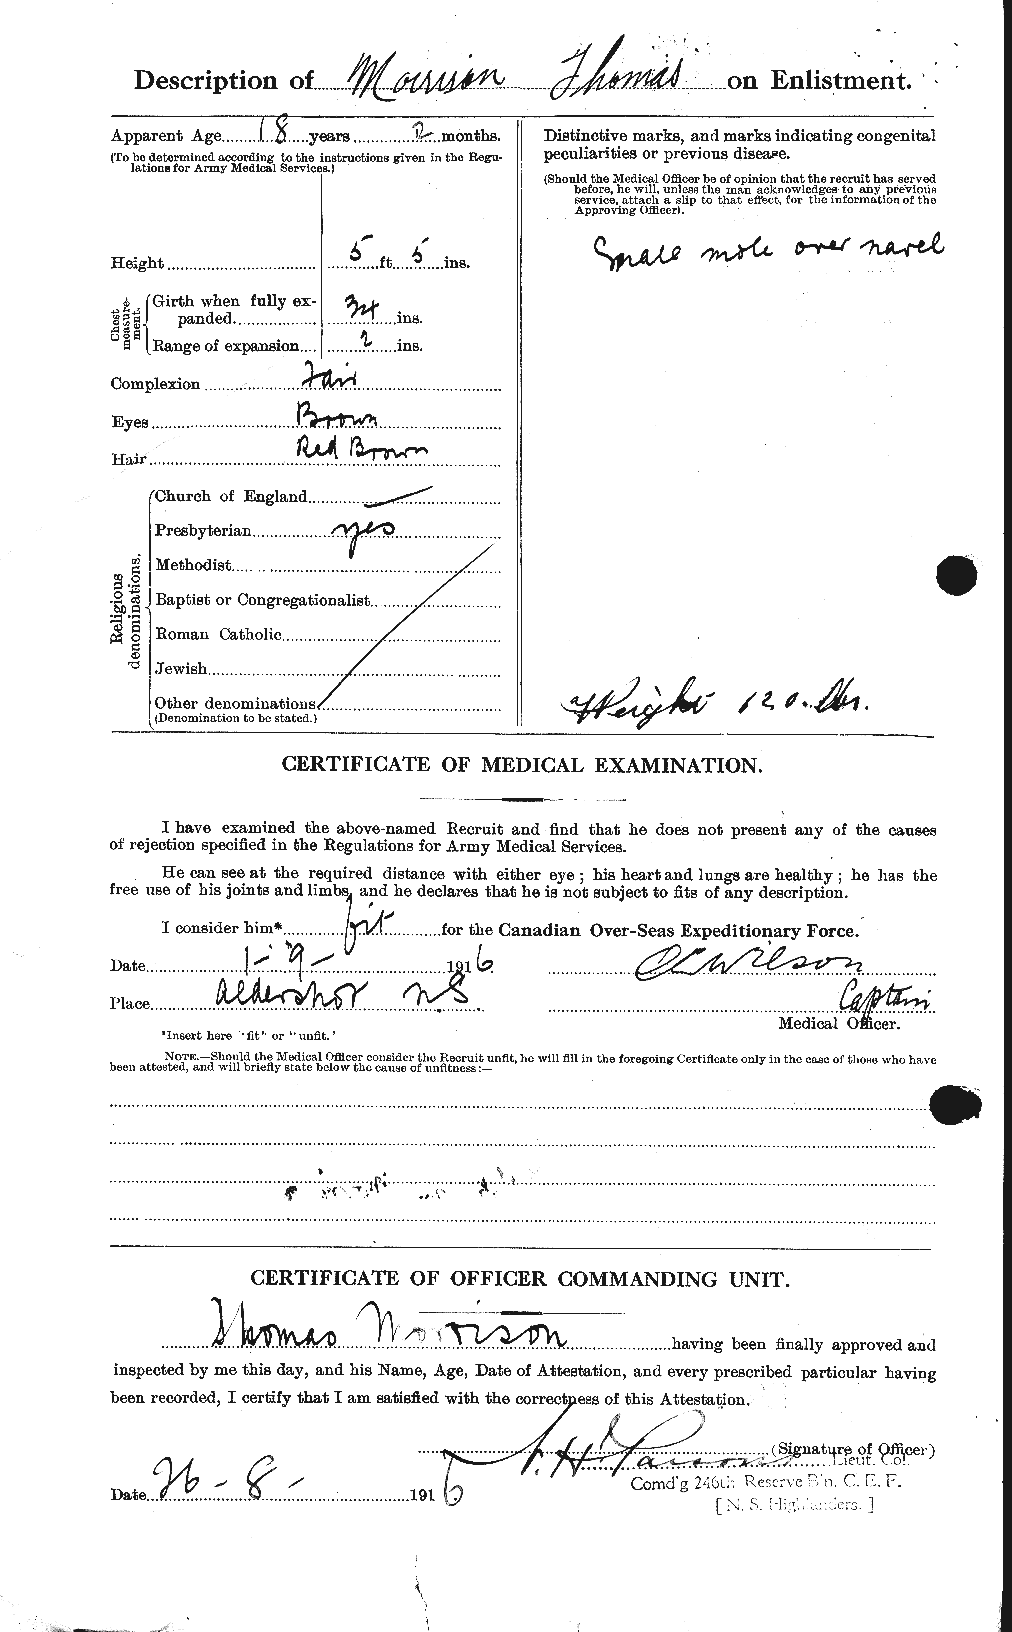 Dossiers du Personnel de la Première Guerre mondiale - CEC 509187b